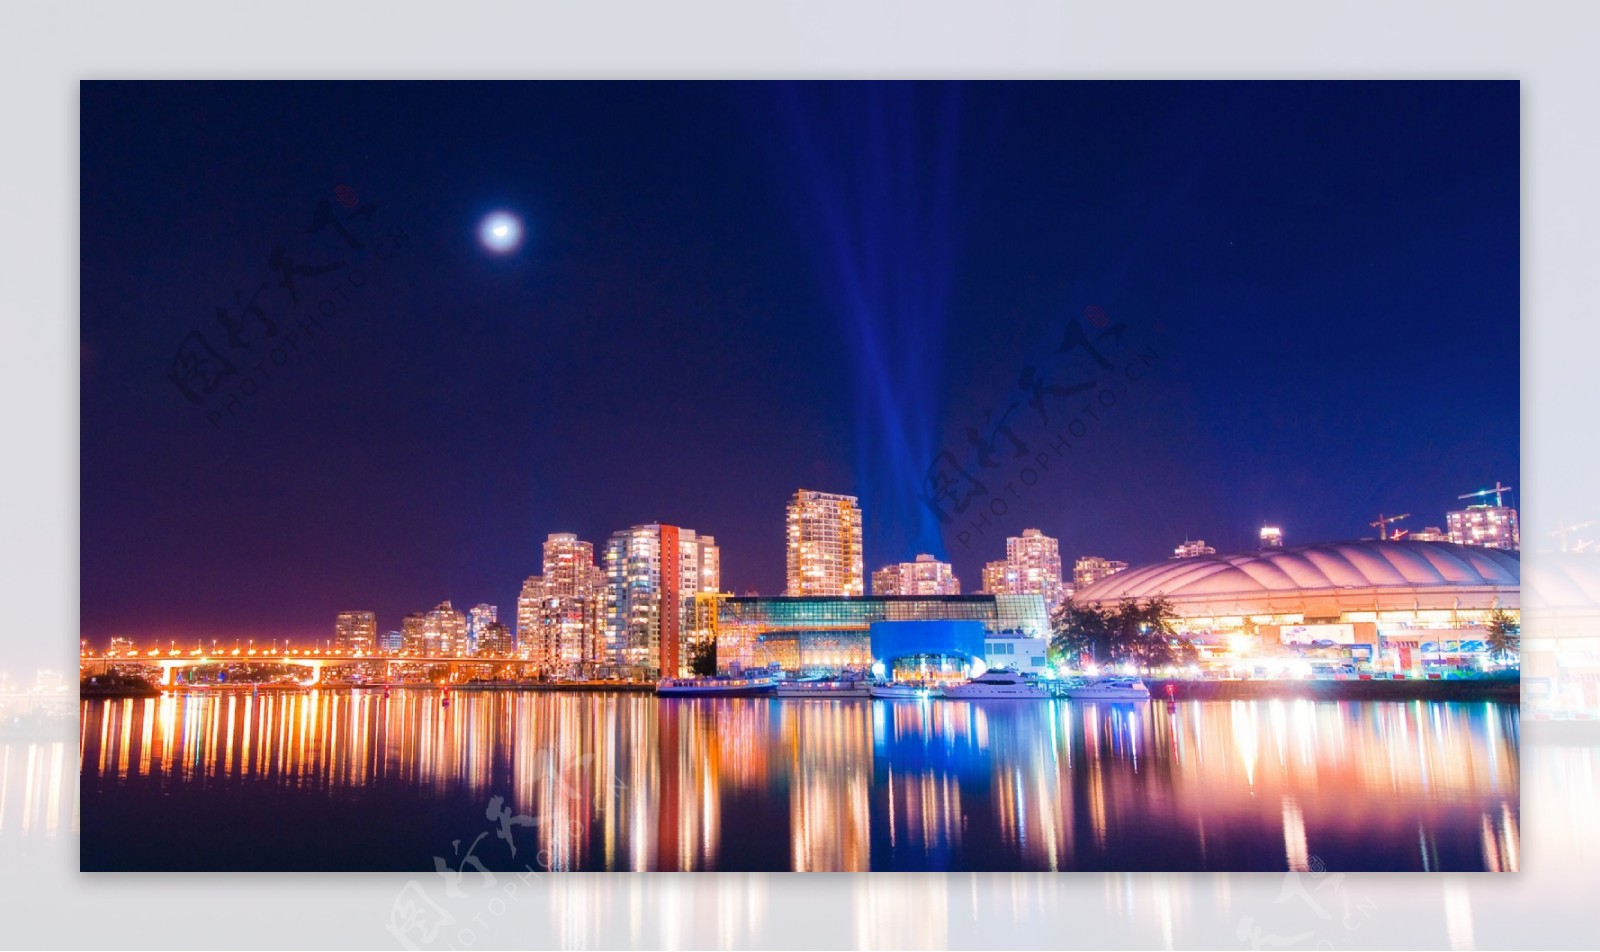 加拿大温哥华夜景图片